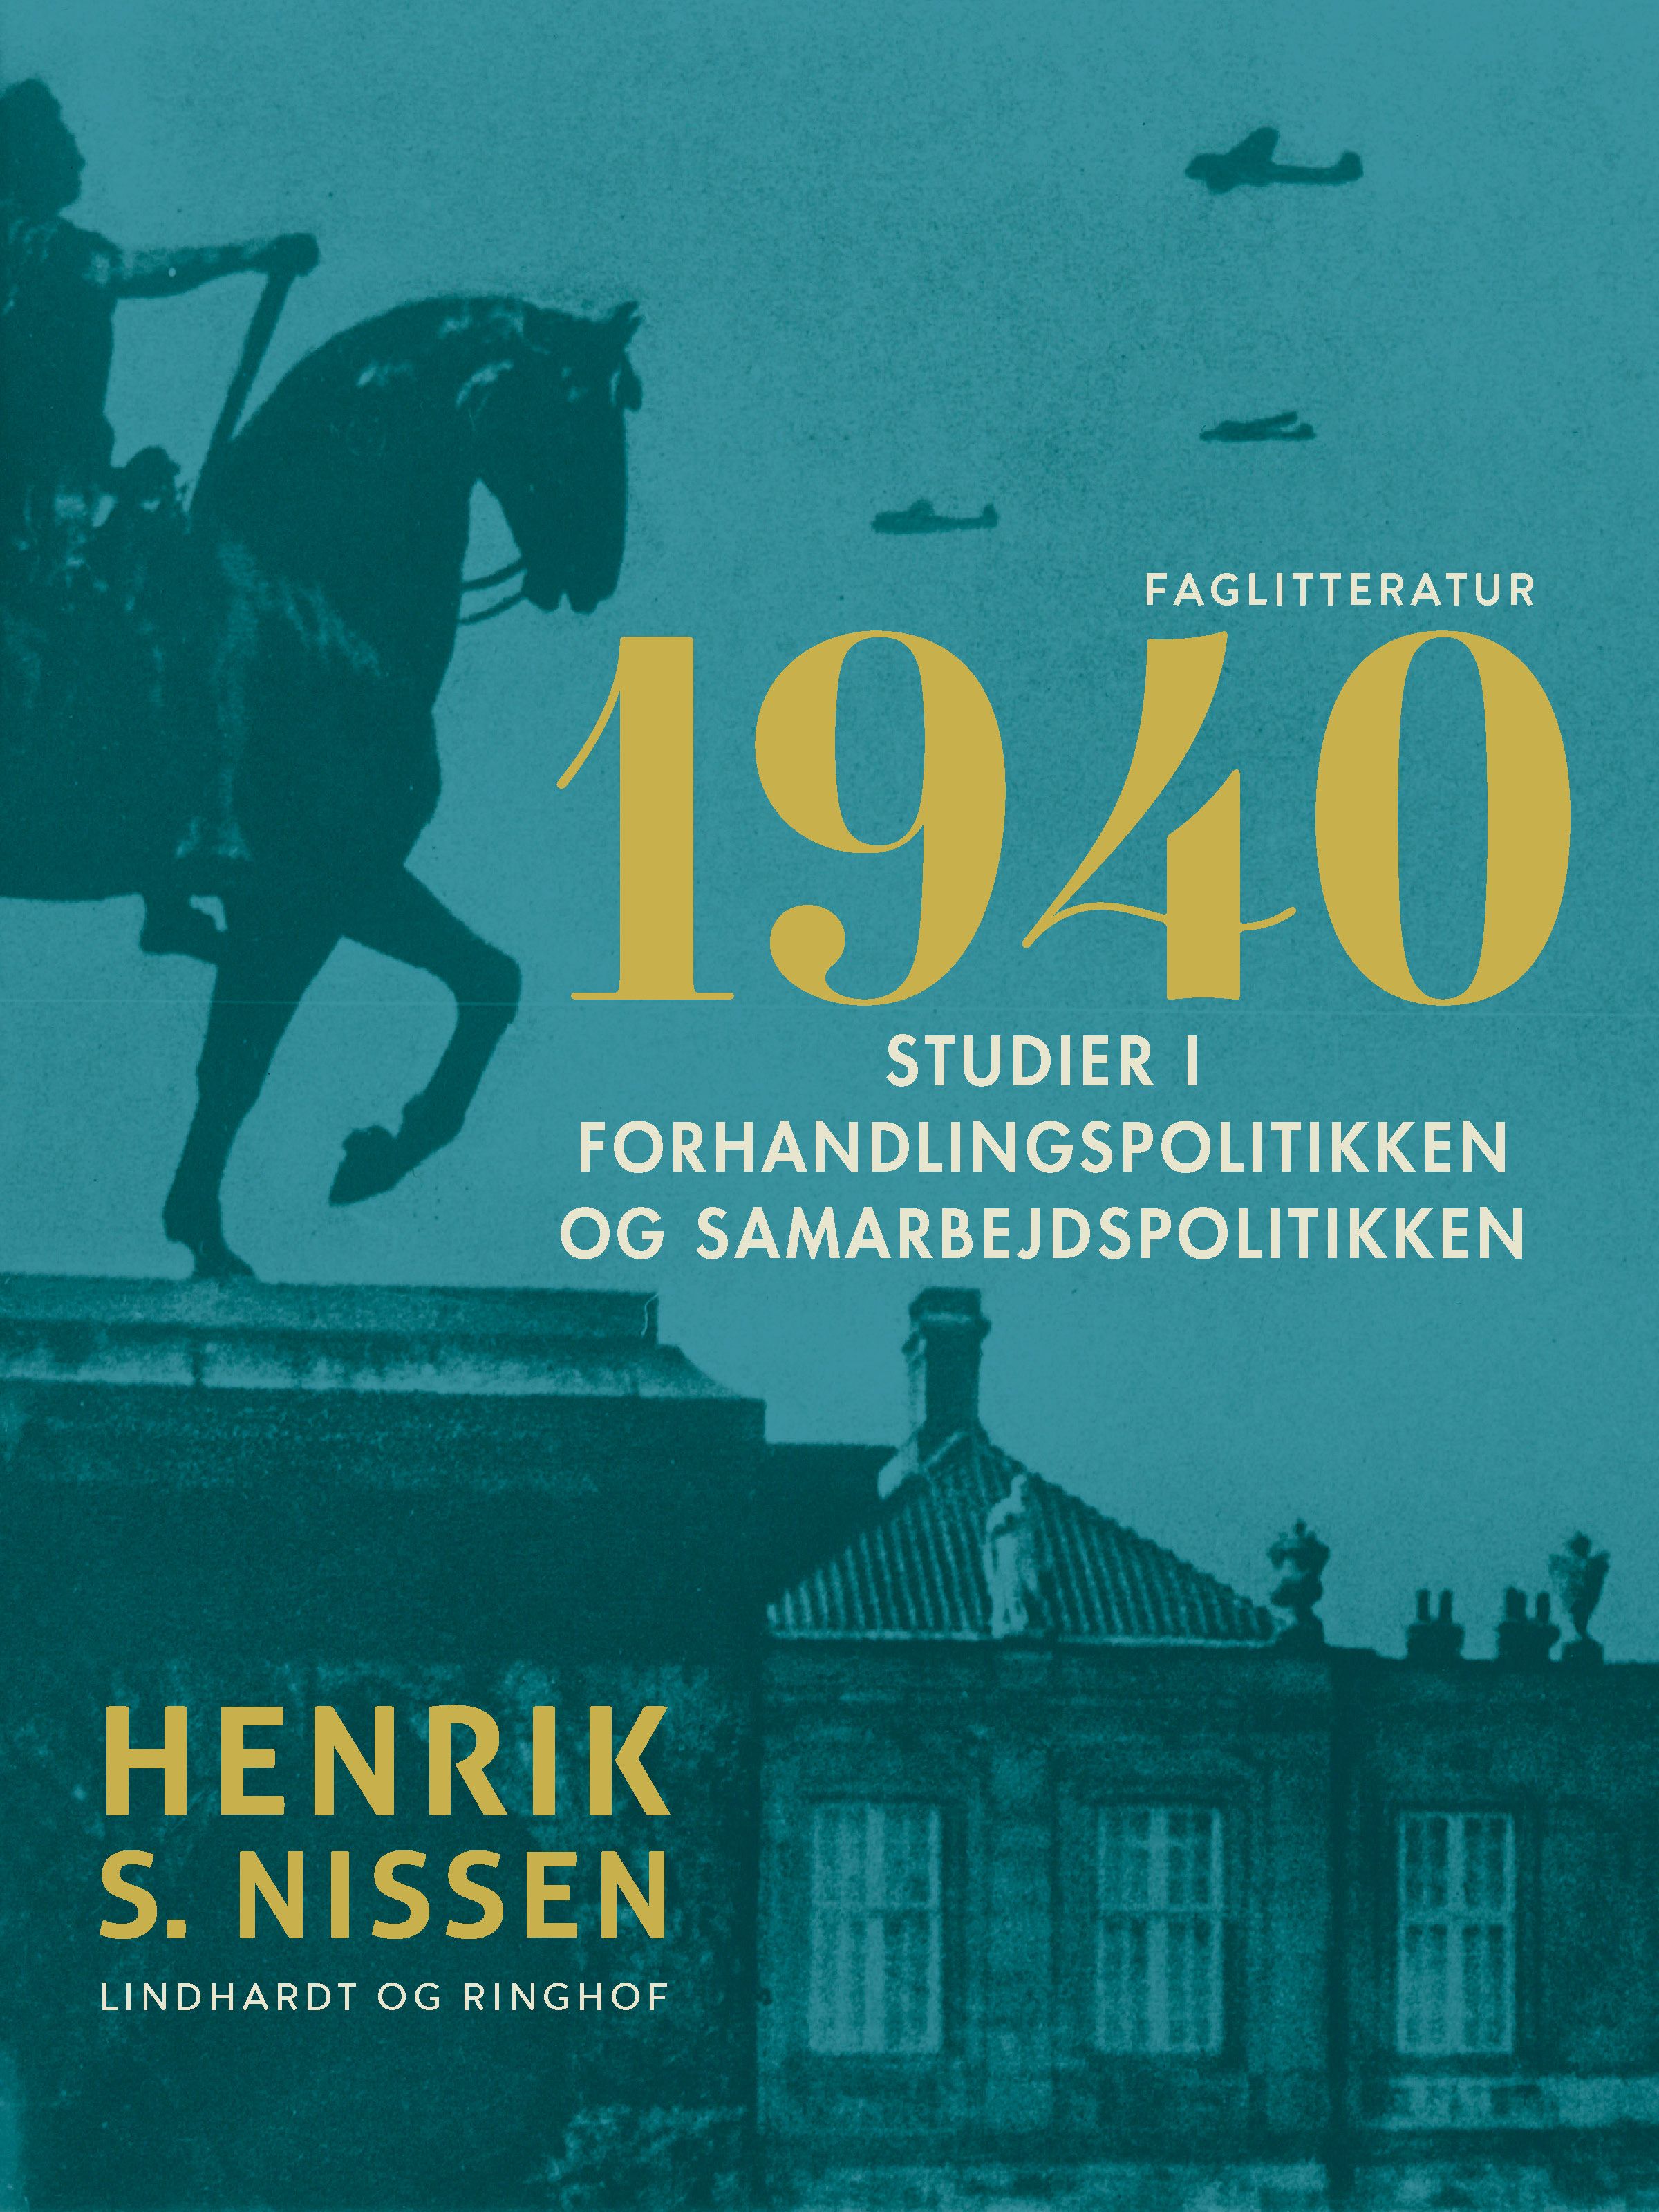 1940. Studier i forhandlingspolitikken og samarbejdspolitikken, e-bog af Henrik S. Nissen